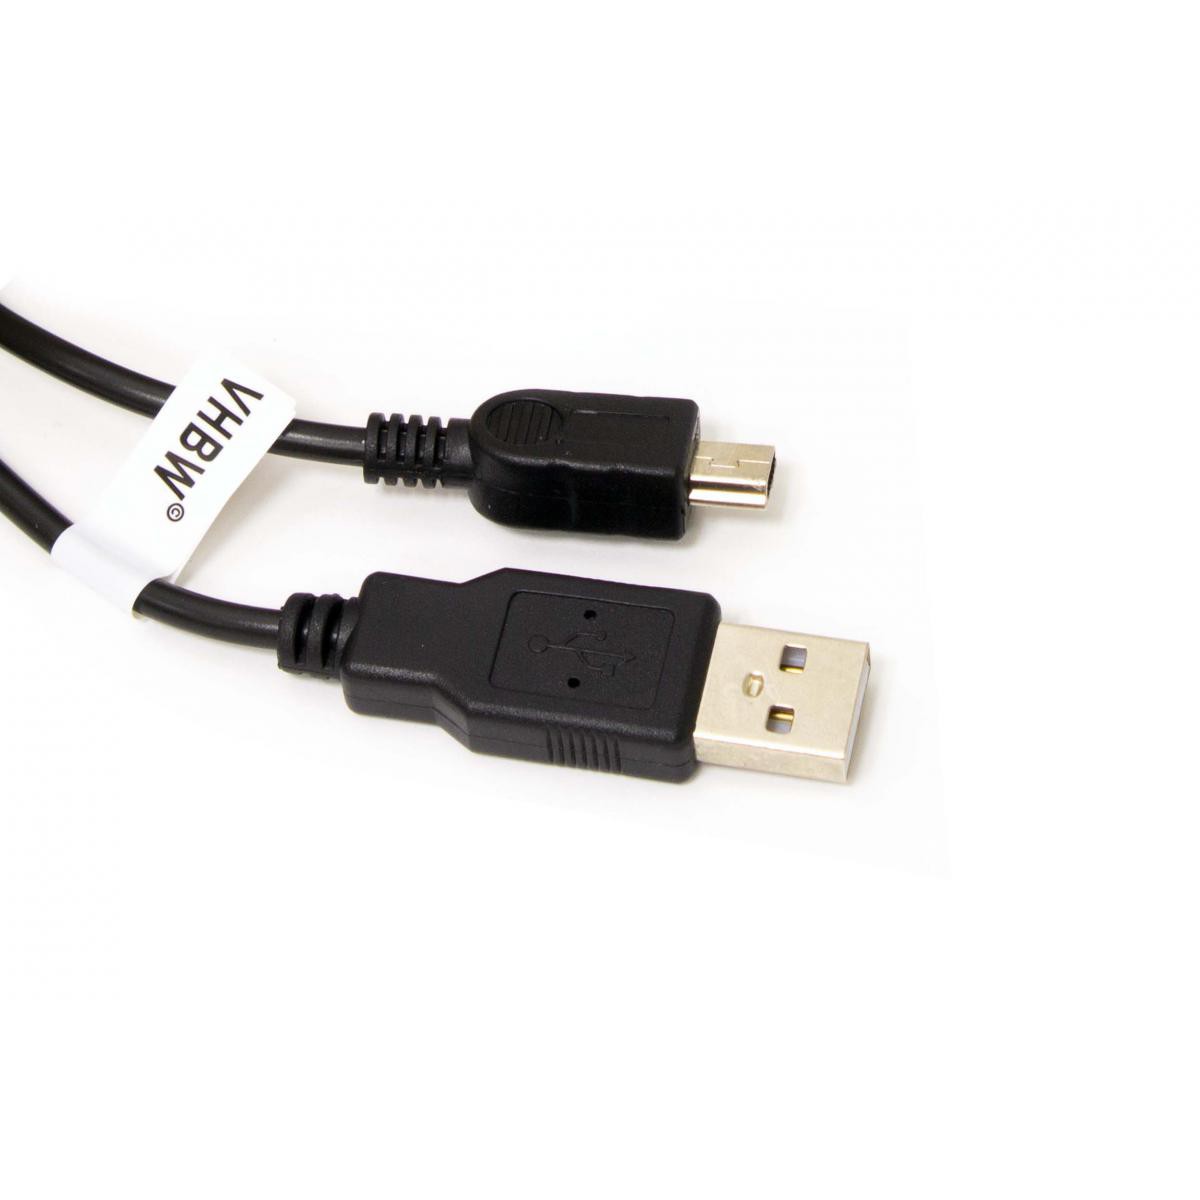 Vhbw - Câble USB A-Mini-B 5 pôles noir/black, longueur 1m, pour SONY - Câble antenne